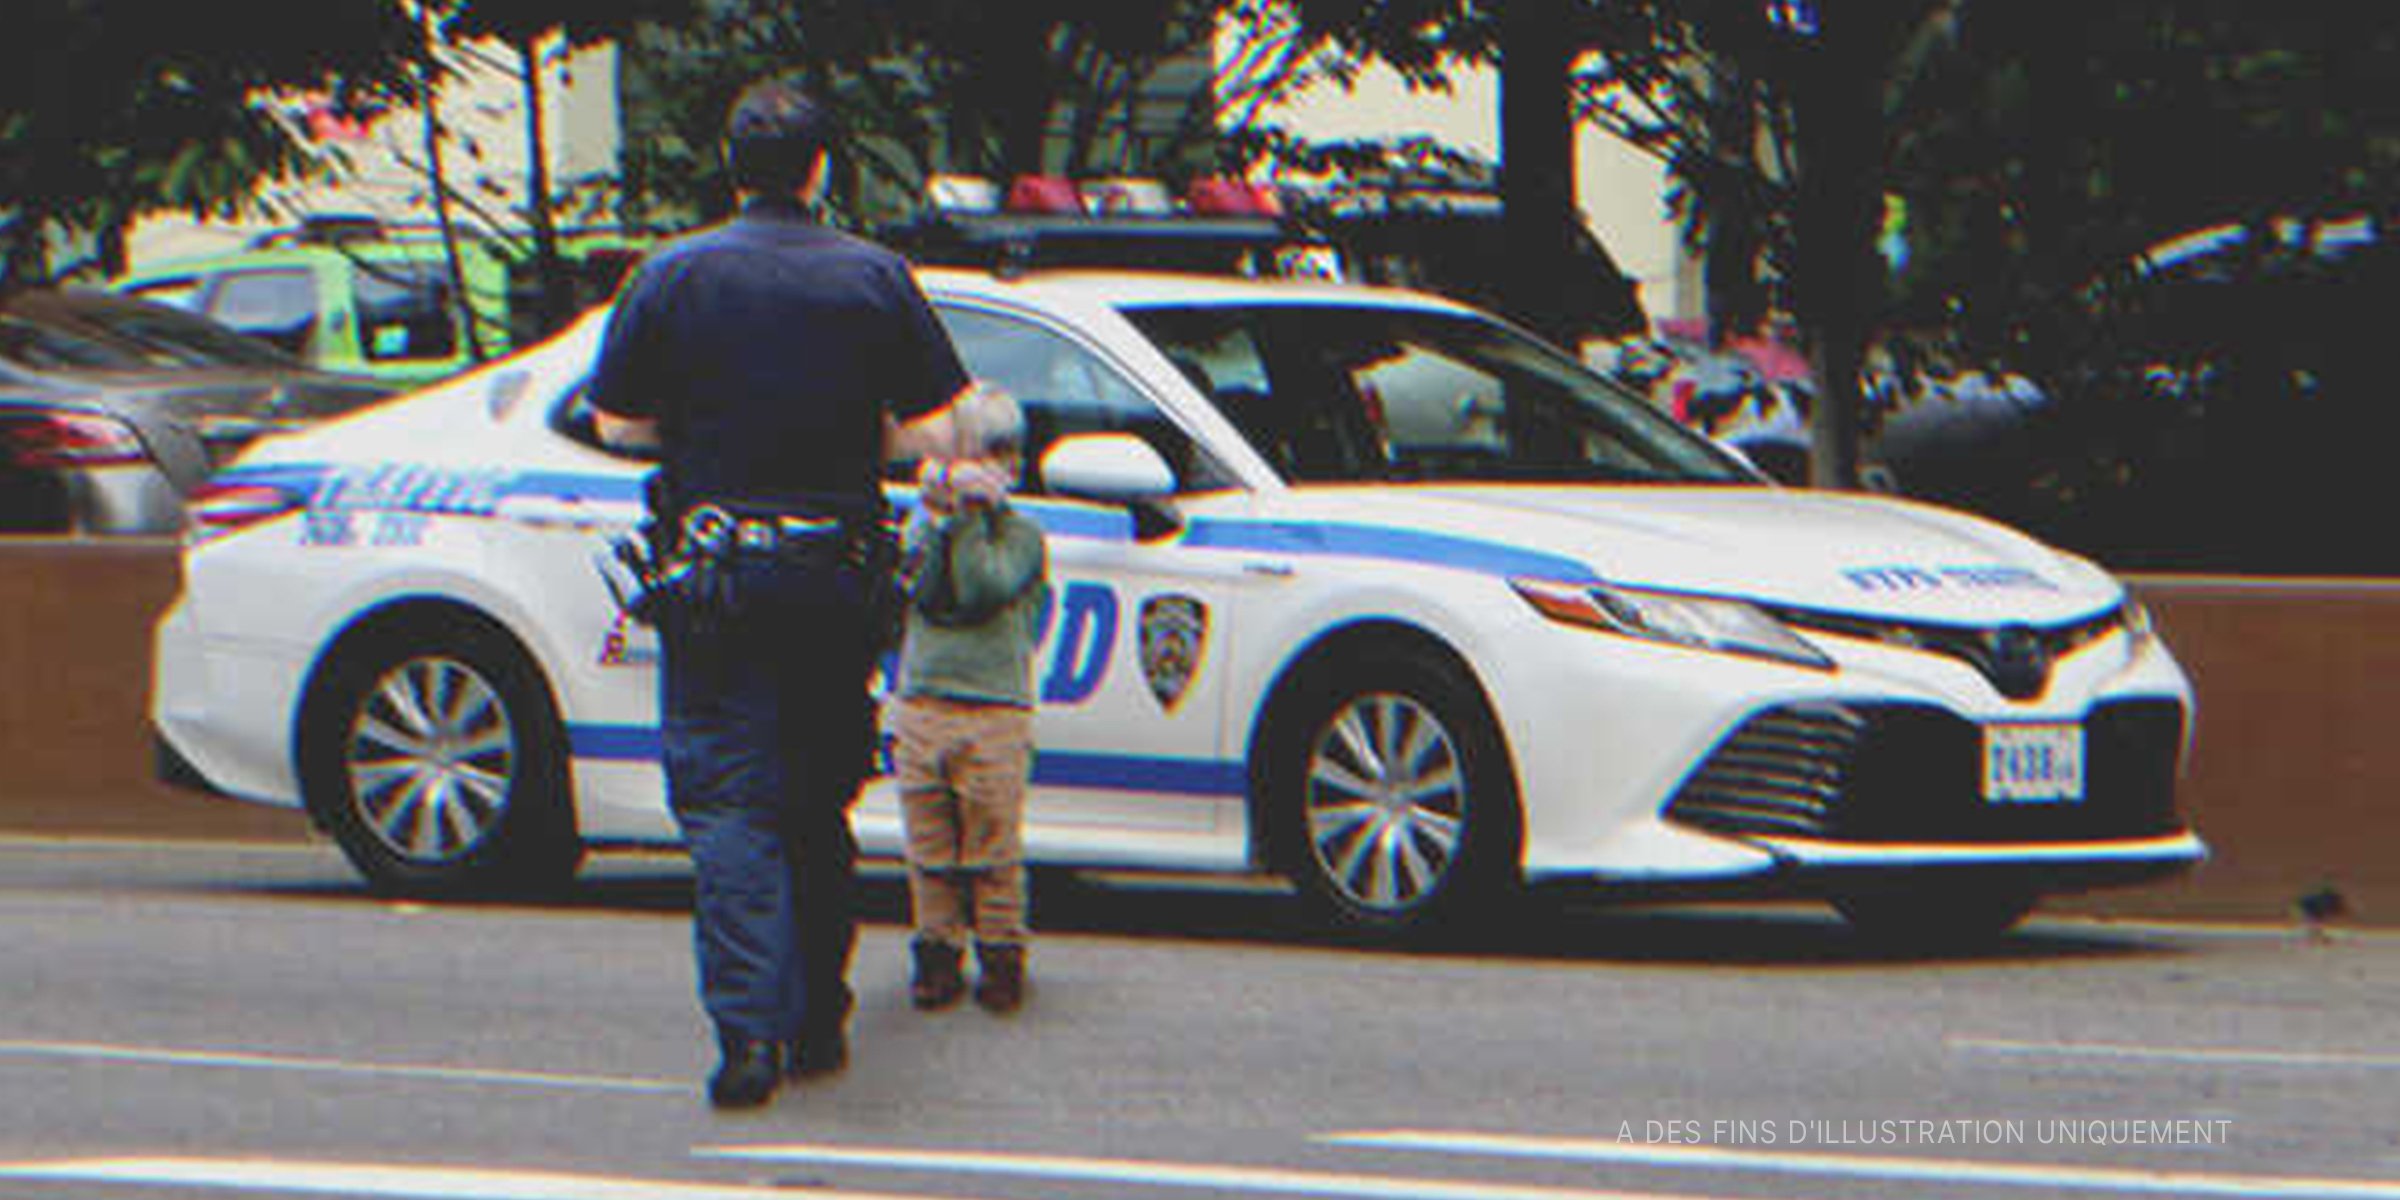 Un policier et un petit garçon | Source : Getty Images Shutterstock Flickr / JLaw45 (CC BY 2.0)